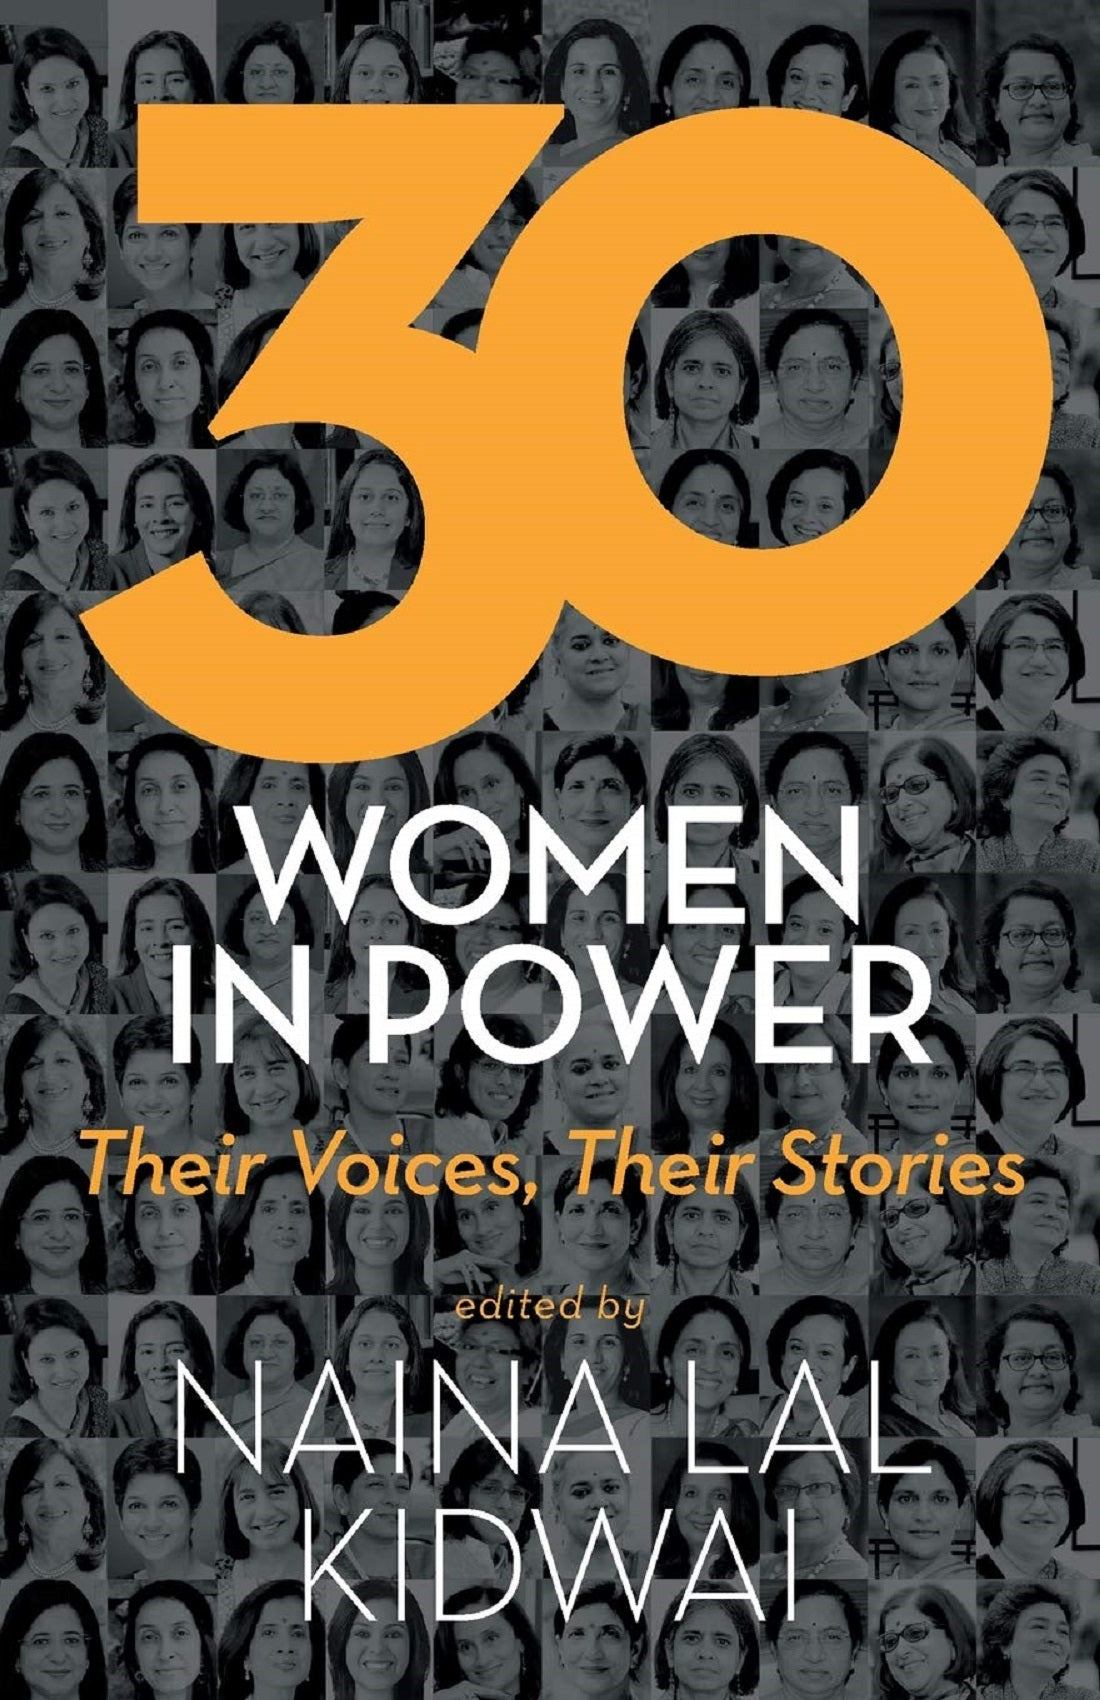 30 WOMEN IN POWER THEIR VOICE, THEIR STORIES